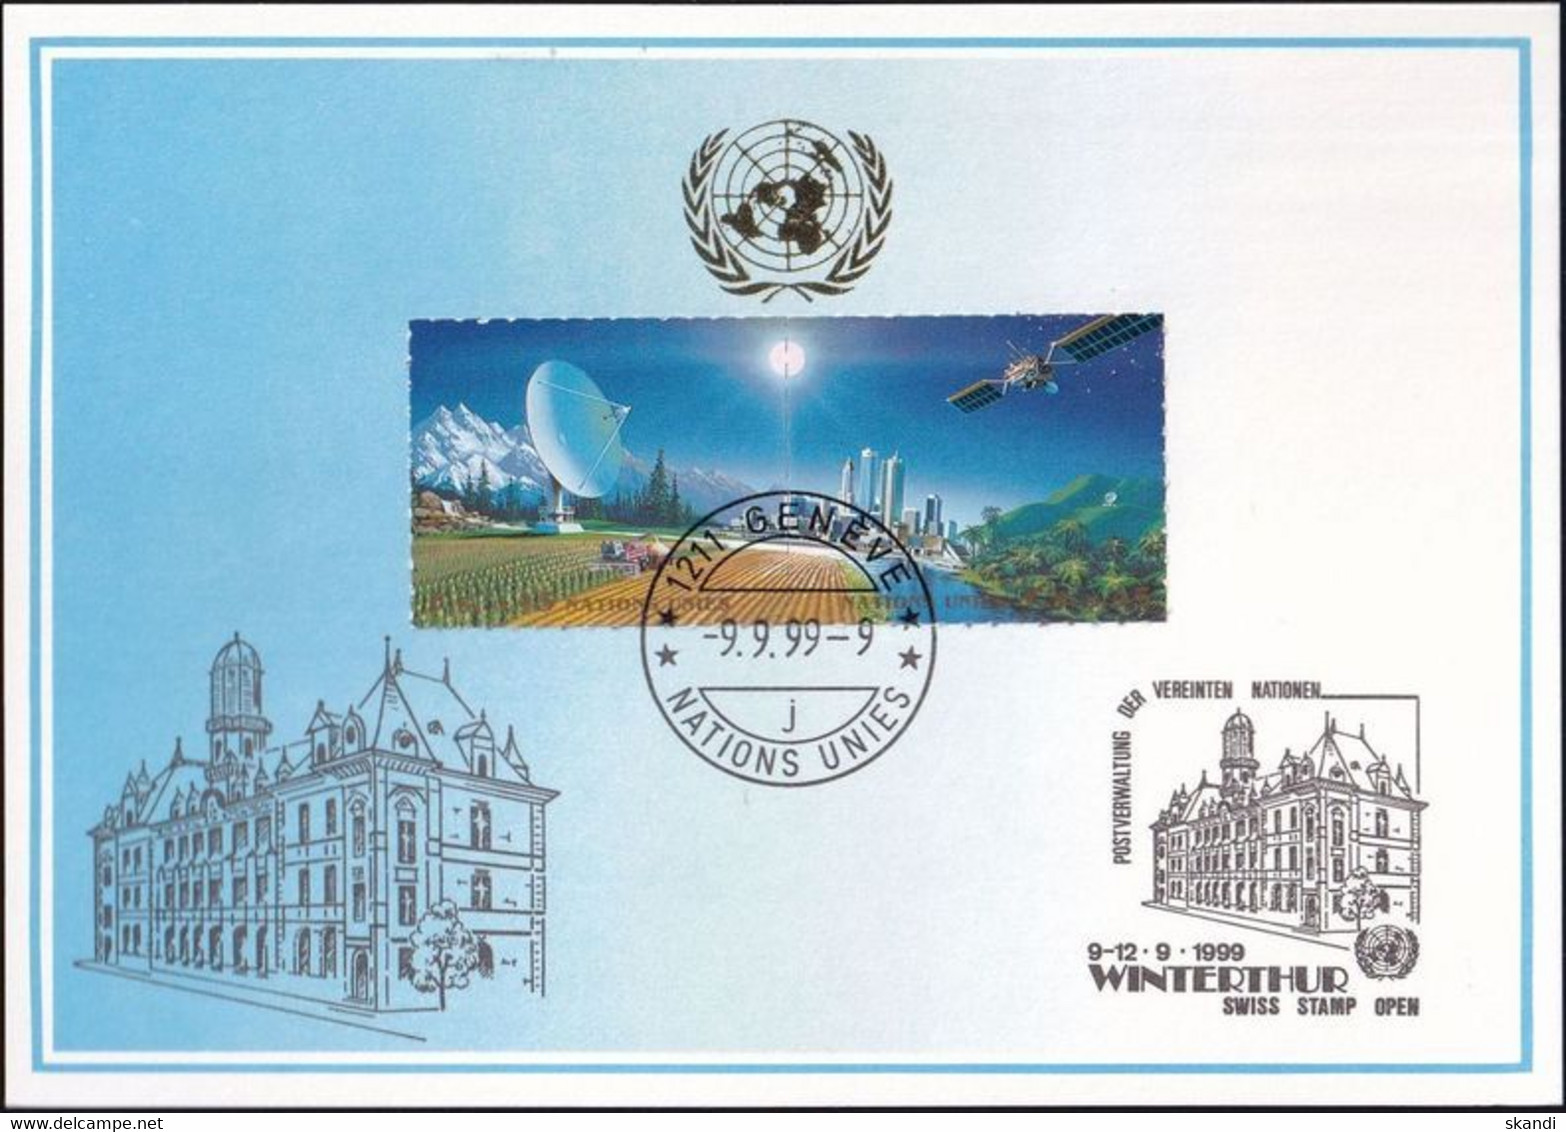 UNO GENF 1999 Mi-Nr. 302 Blaue Karte - Blue Card  Mit Erinnerungsstempel WINTERTHUR - Covers & Documents